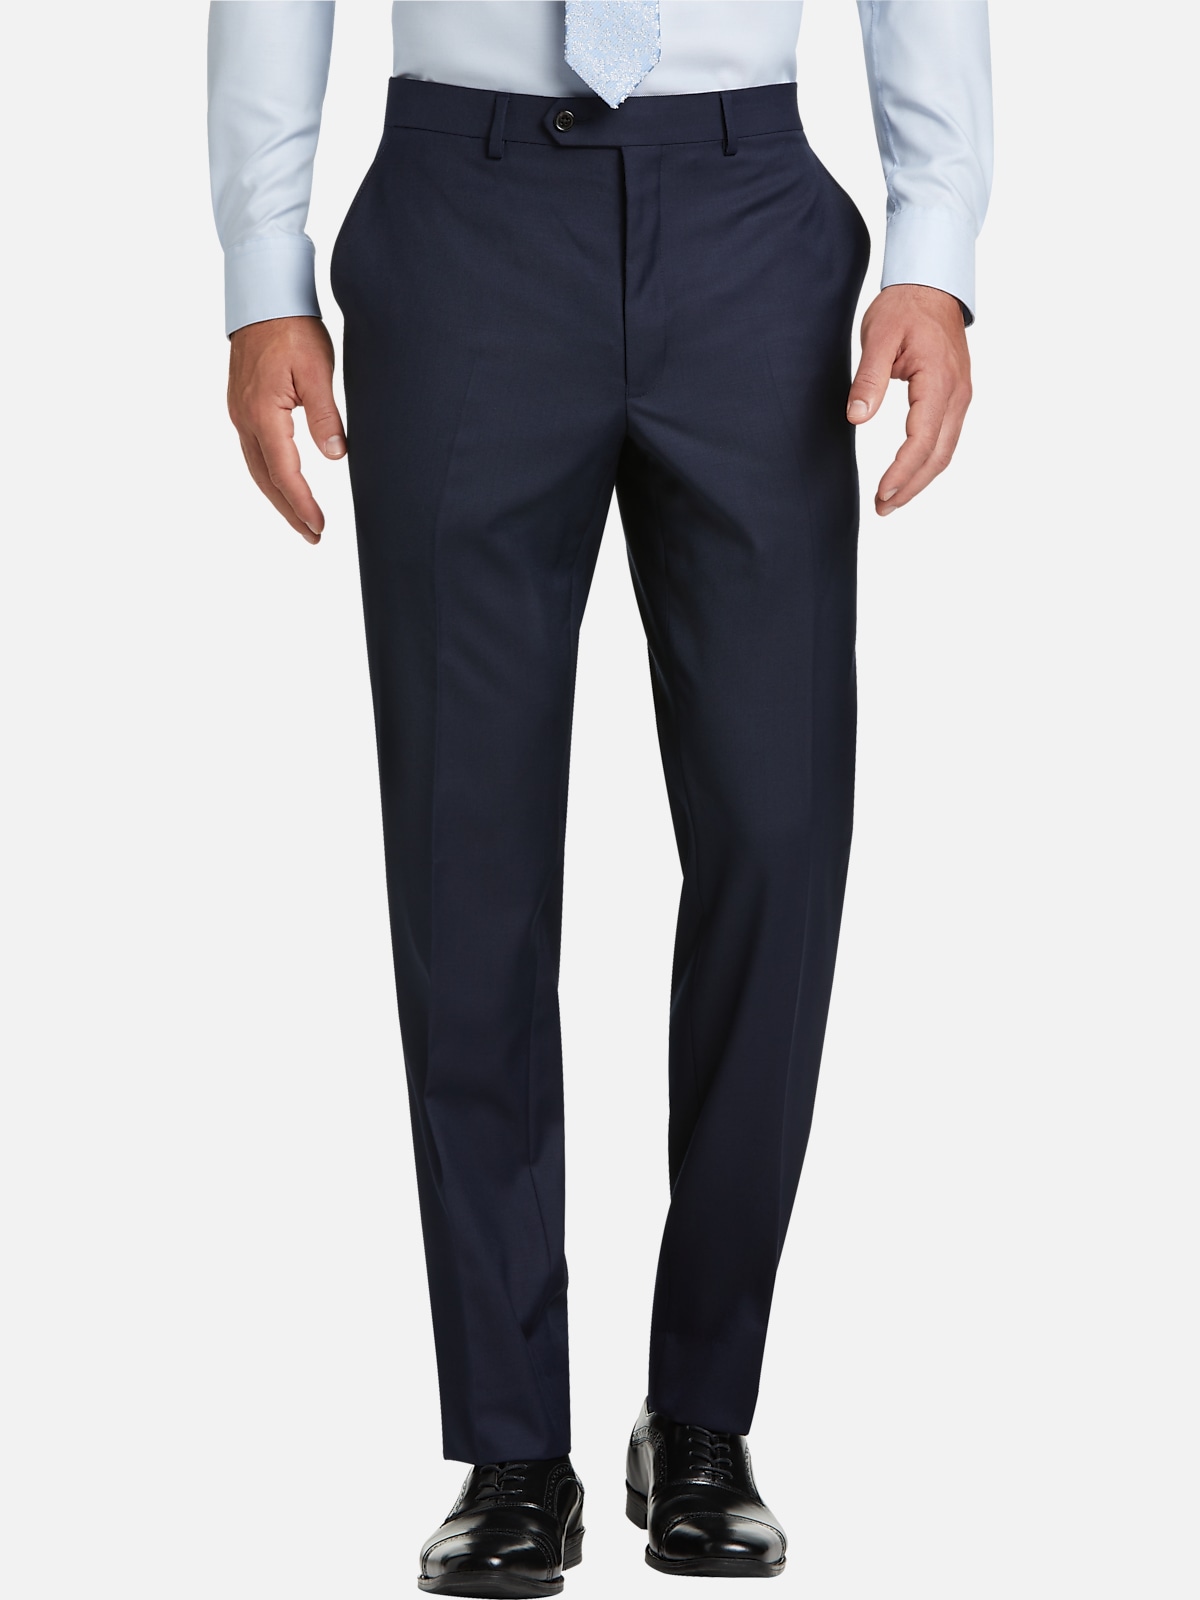 Lauren By Ralph Lauren Classic Fit Suit Separates Pants | All Sale| Men ...